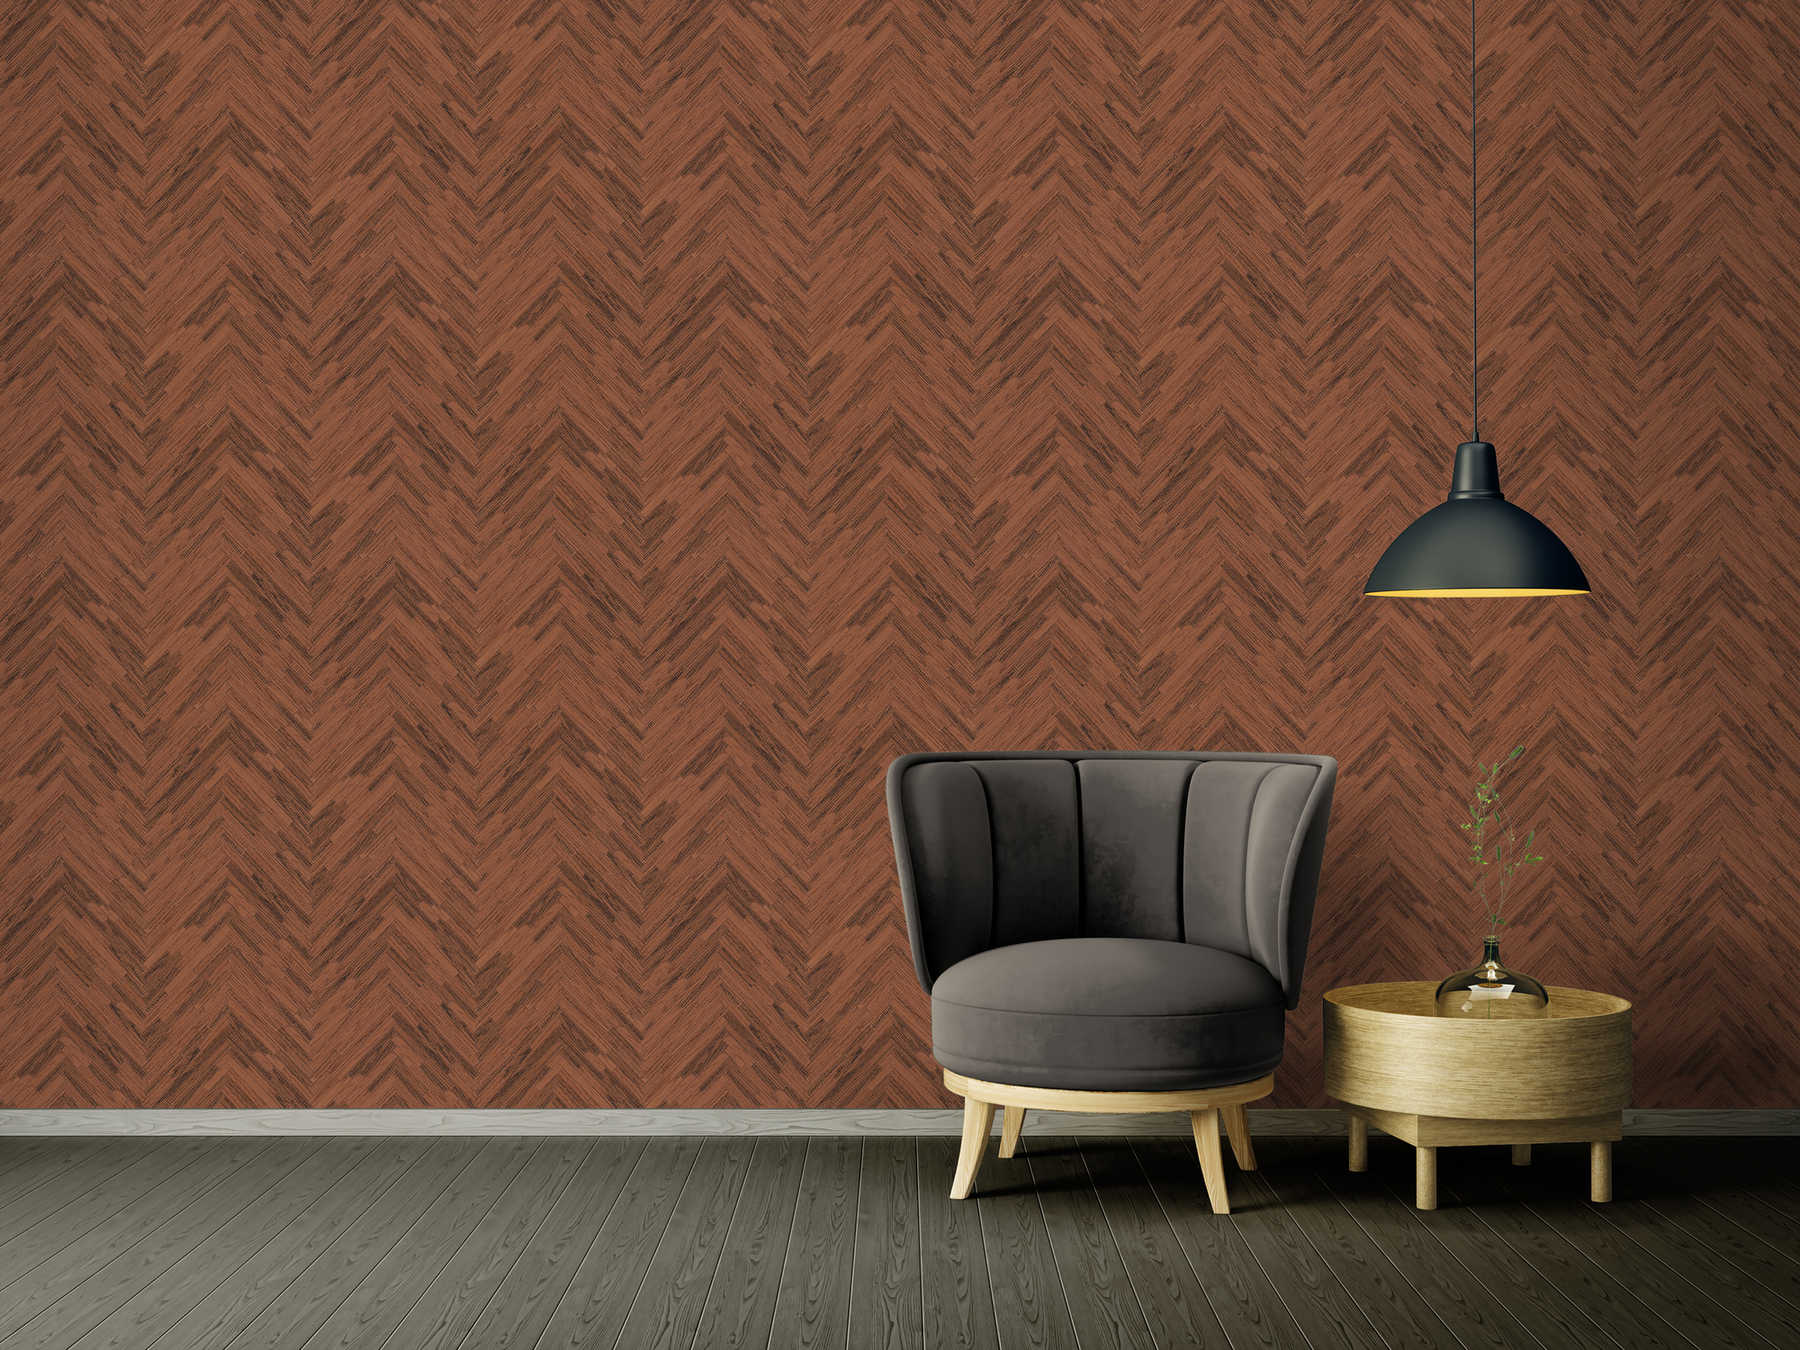             VERSACE Home wallpaper elegant wood look - brown, copper, red
        